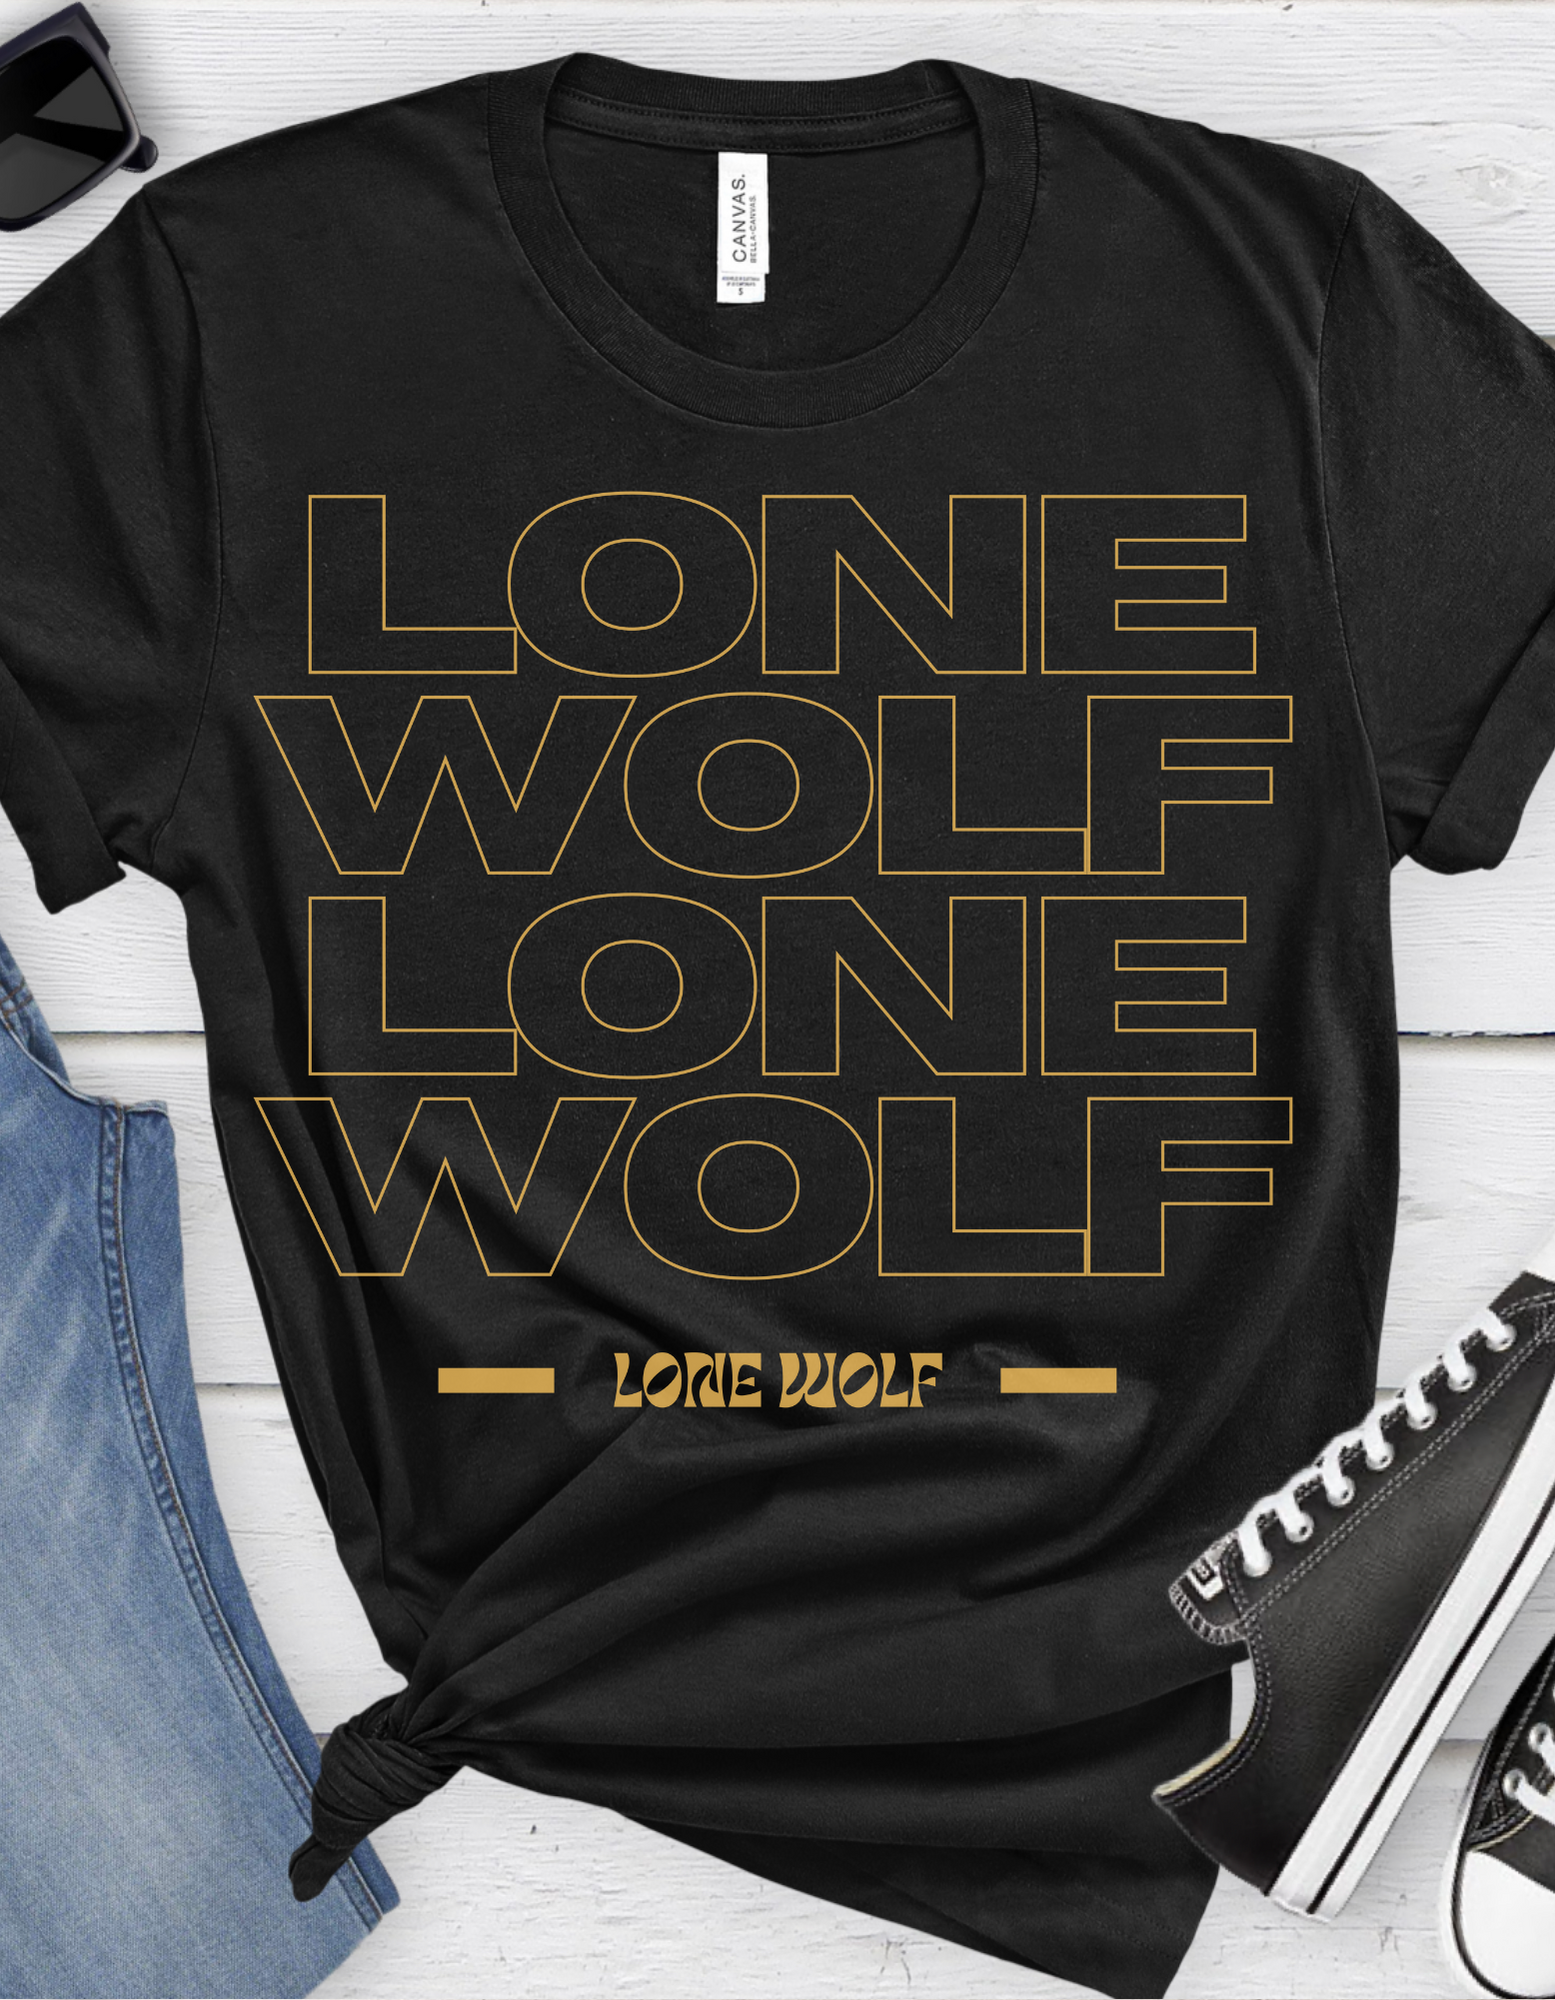 Lone Wolf Tattoo T-shirt / Traditional Tattoo Tee Shirt / Punk Rock Clothing Tshirt Rockabilly Psychobilly Freak Goth - Foxlark Crystal Jewelry